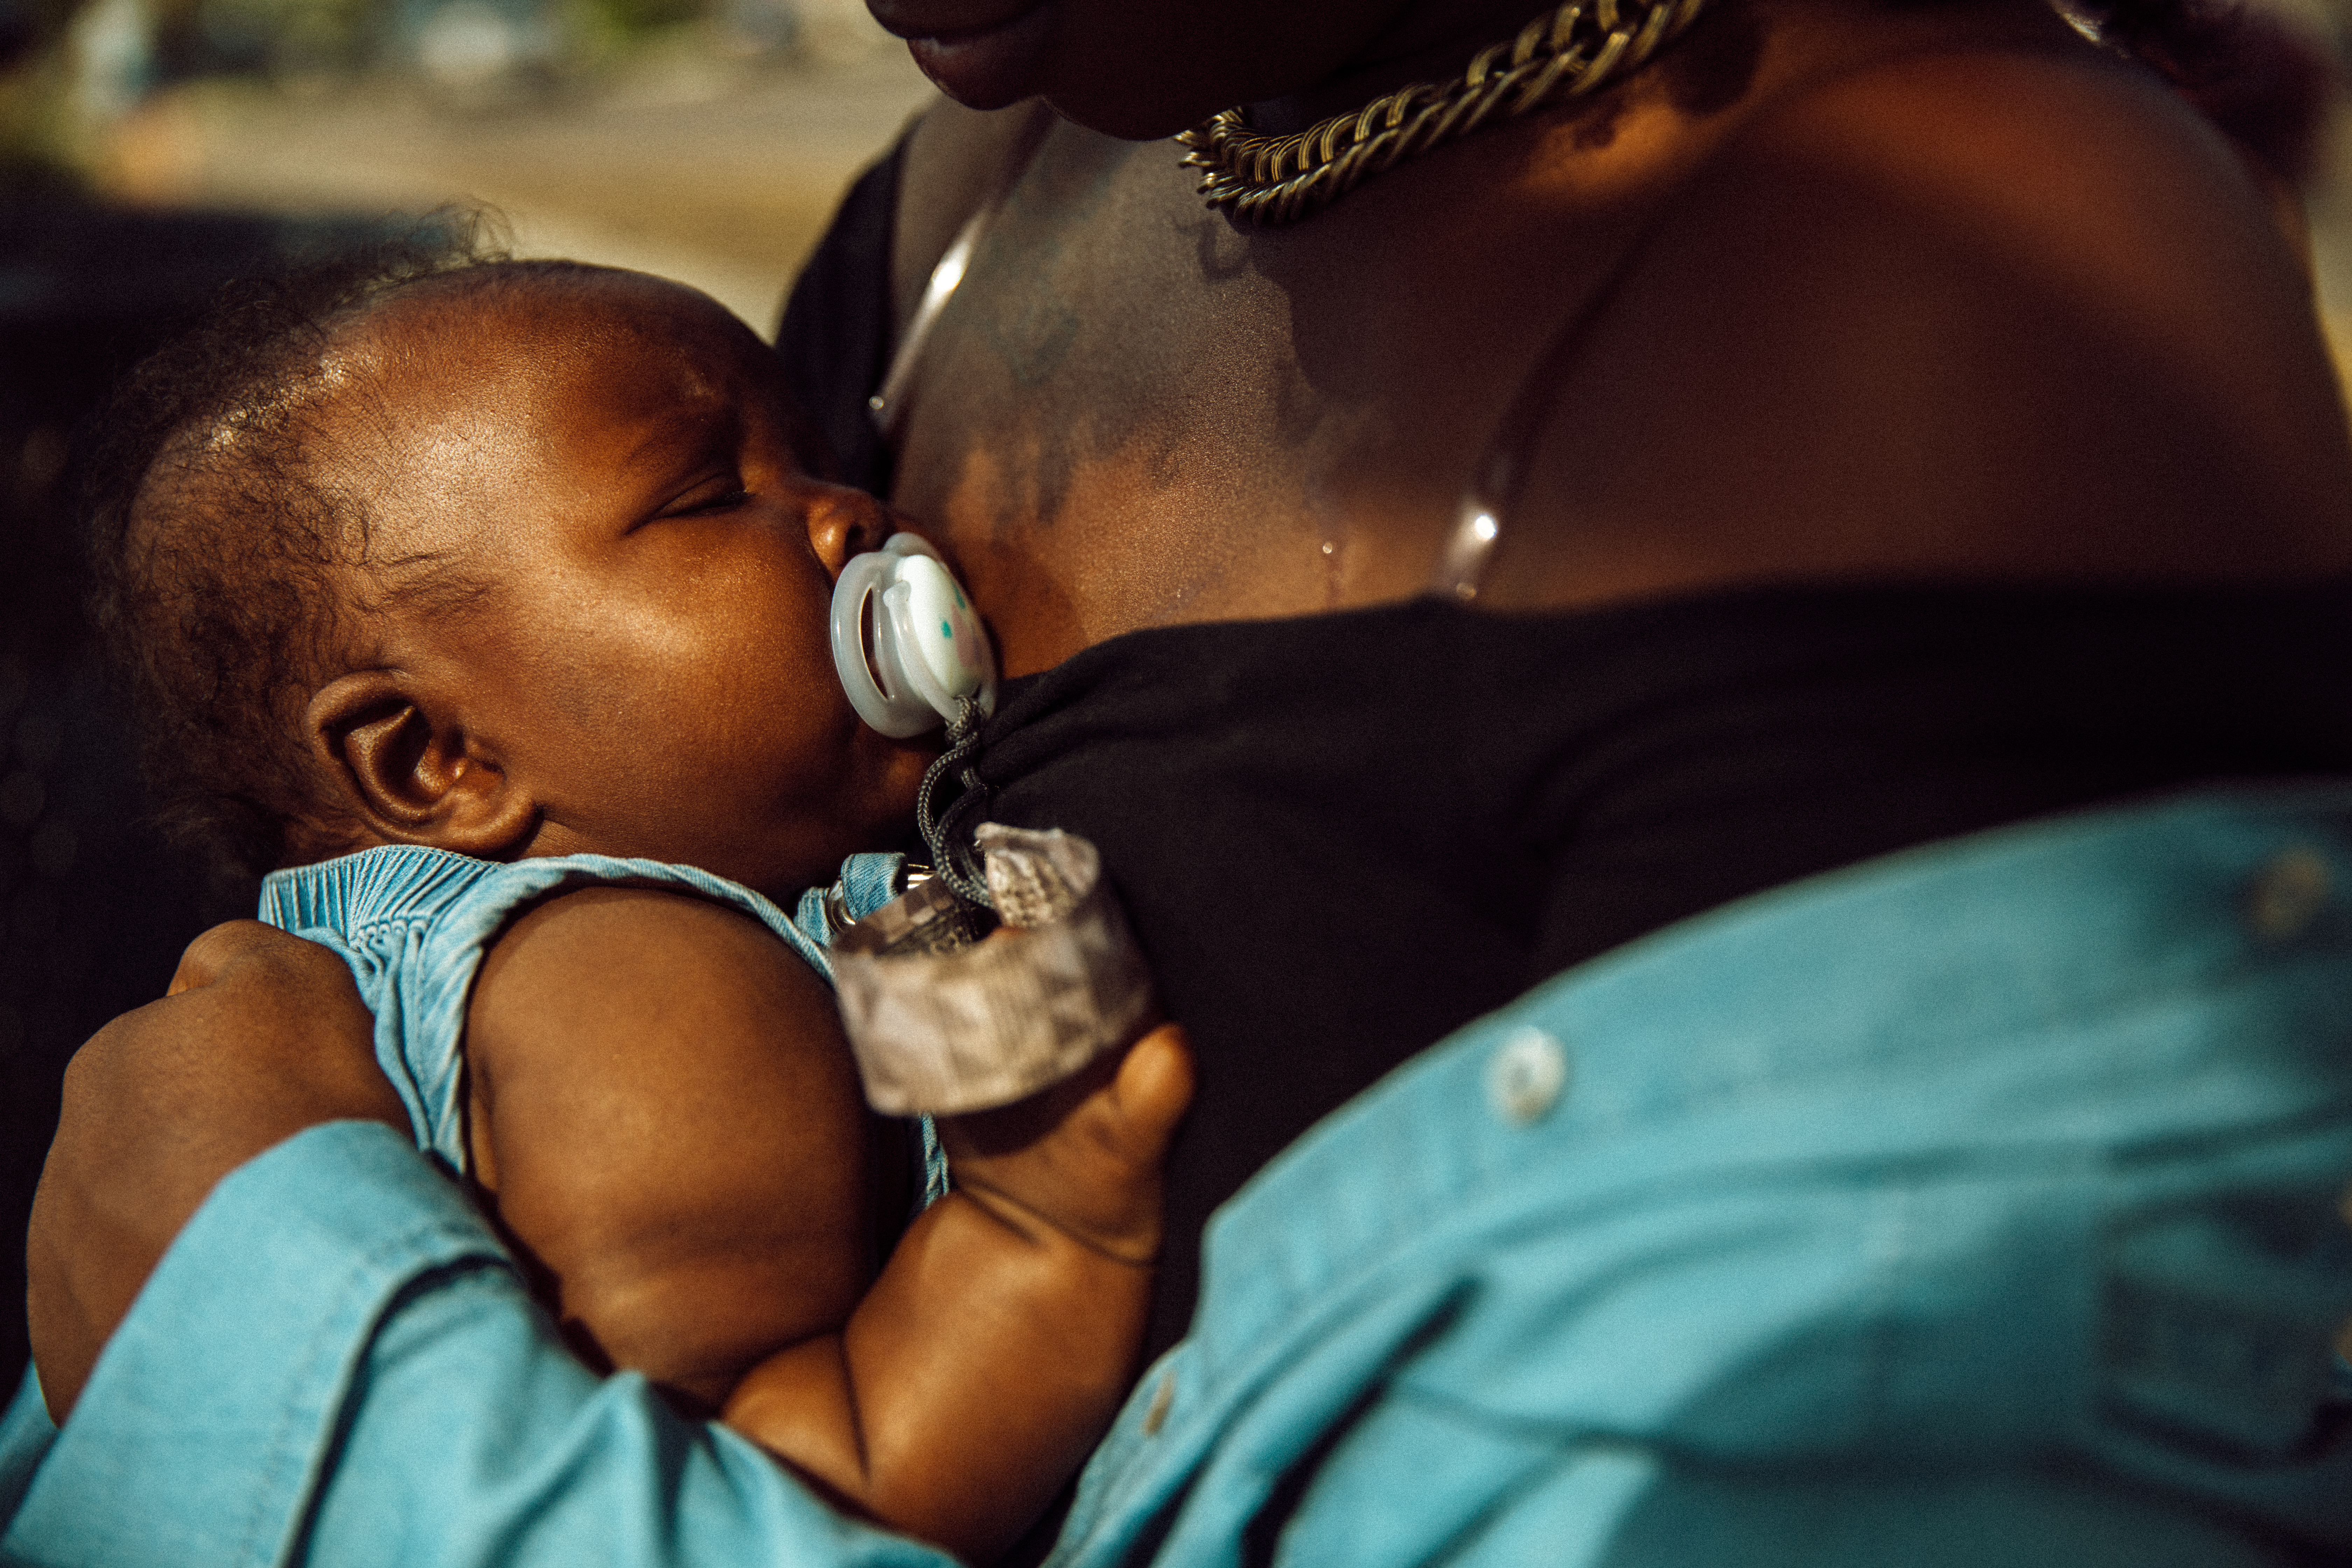 Janel Vee holding her infant daughter.